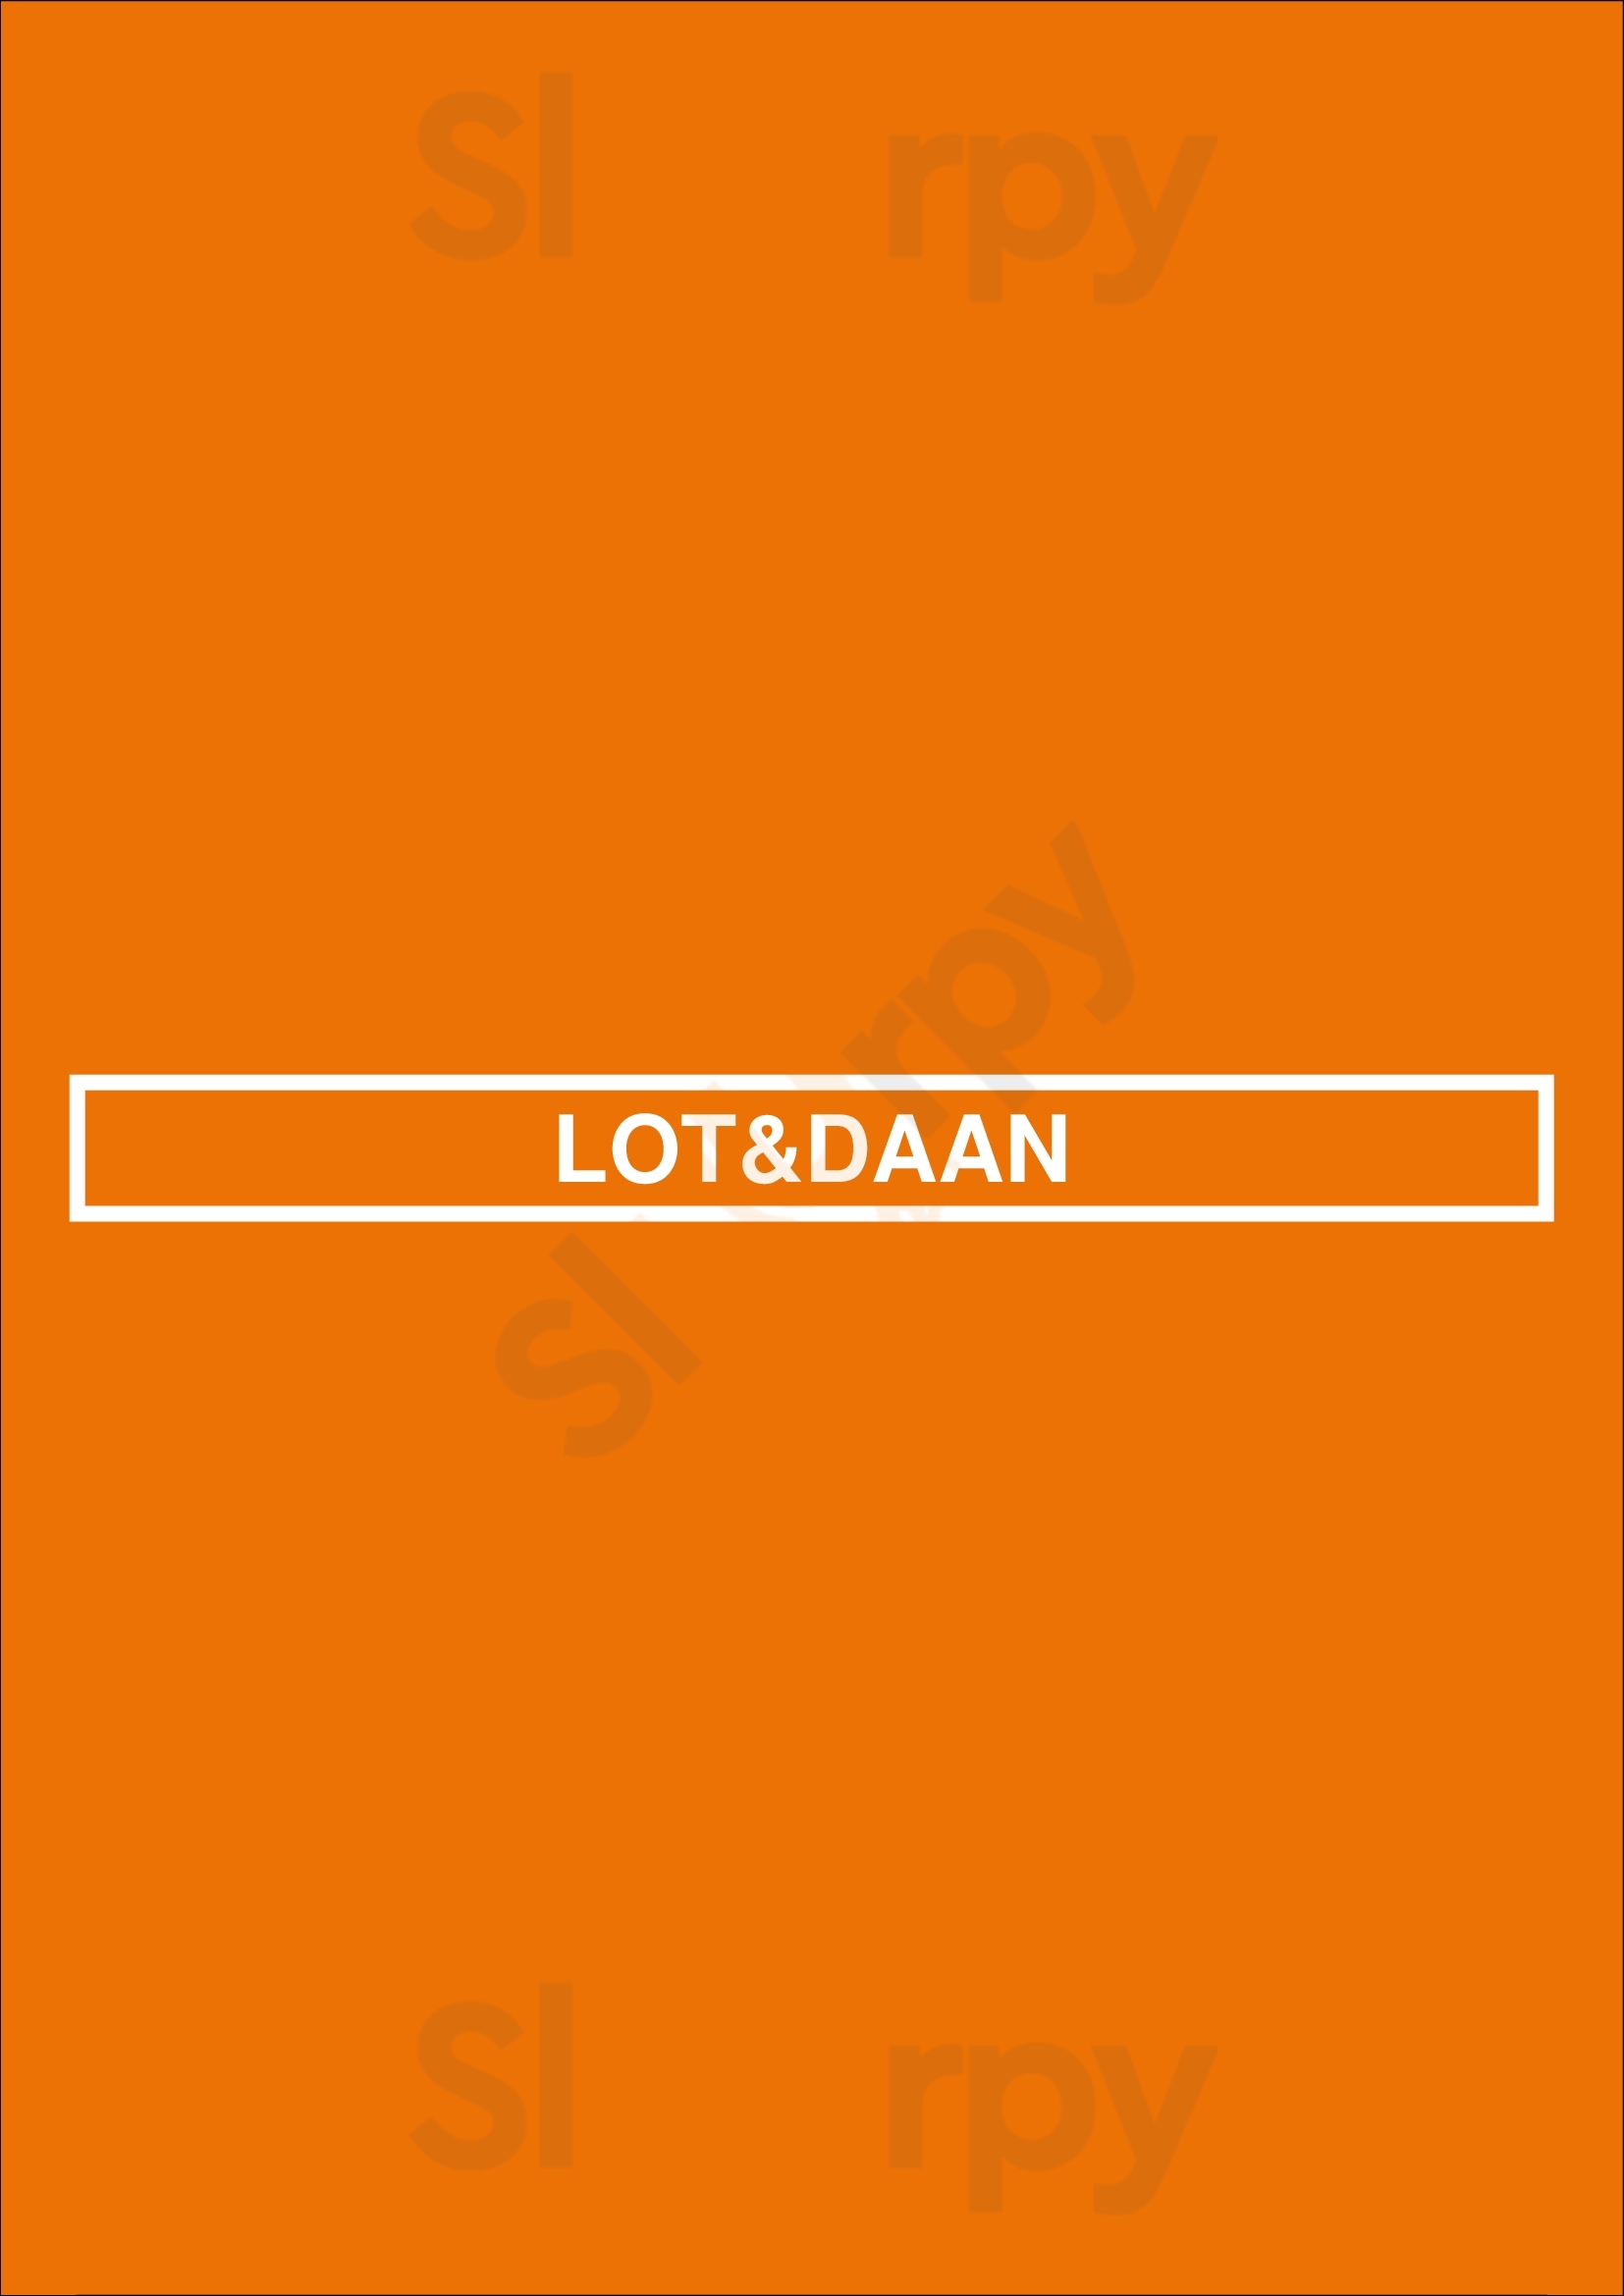 Lot&daan Rotterdam Menu - 1